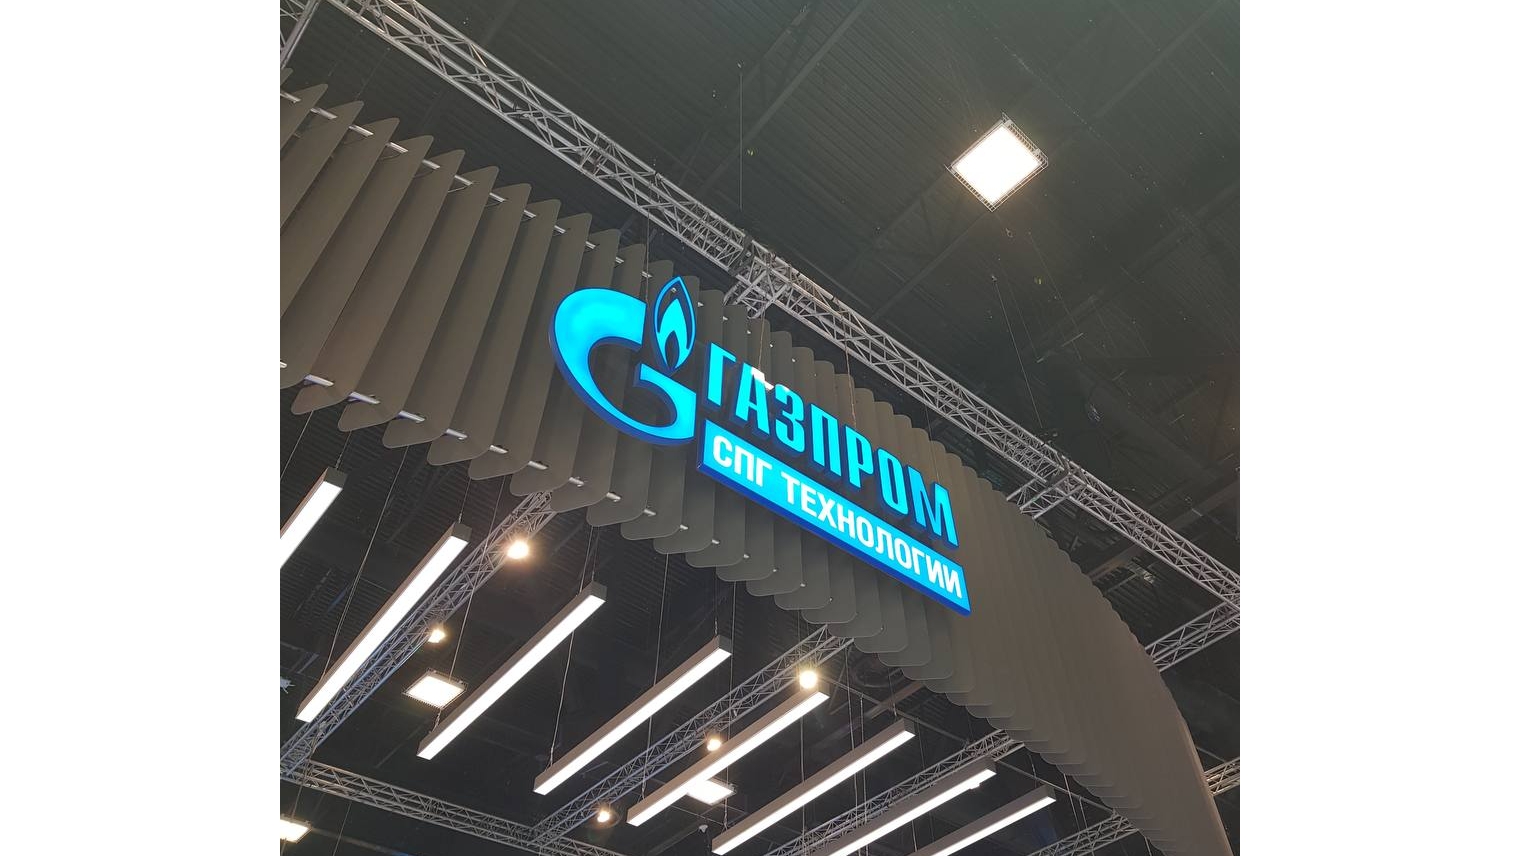 ООО «Газпром СПГ технологии» построит 22 малых СПГ-завода. Инвестиции составят 130 млрд. рублей